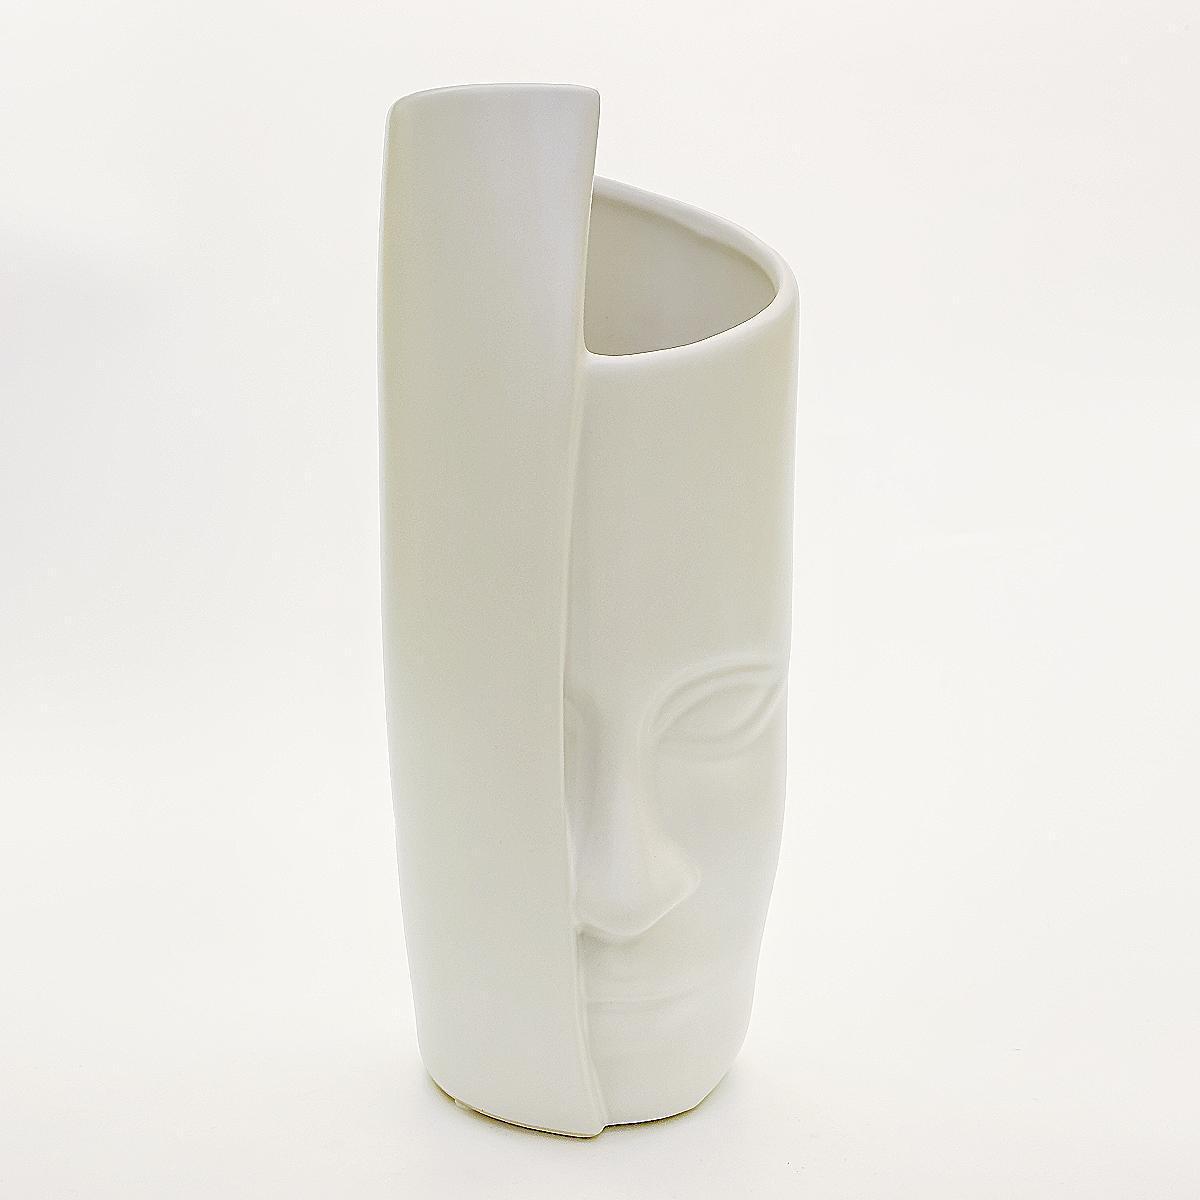 北欧简约人面艺术陶瓷花瓶摆件家居样板间软装插花白色花瓶摆设